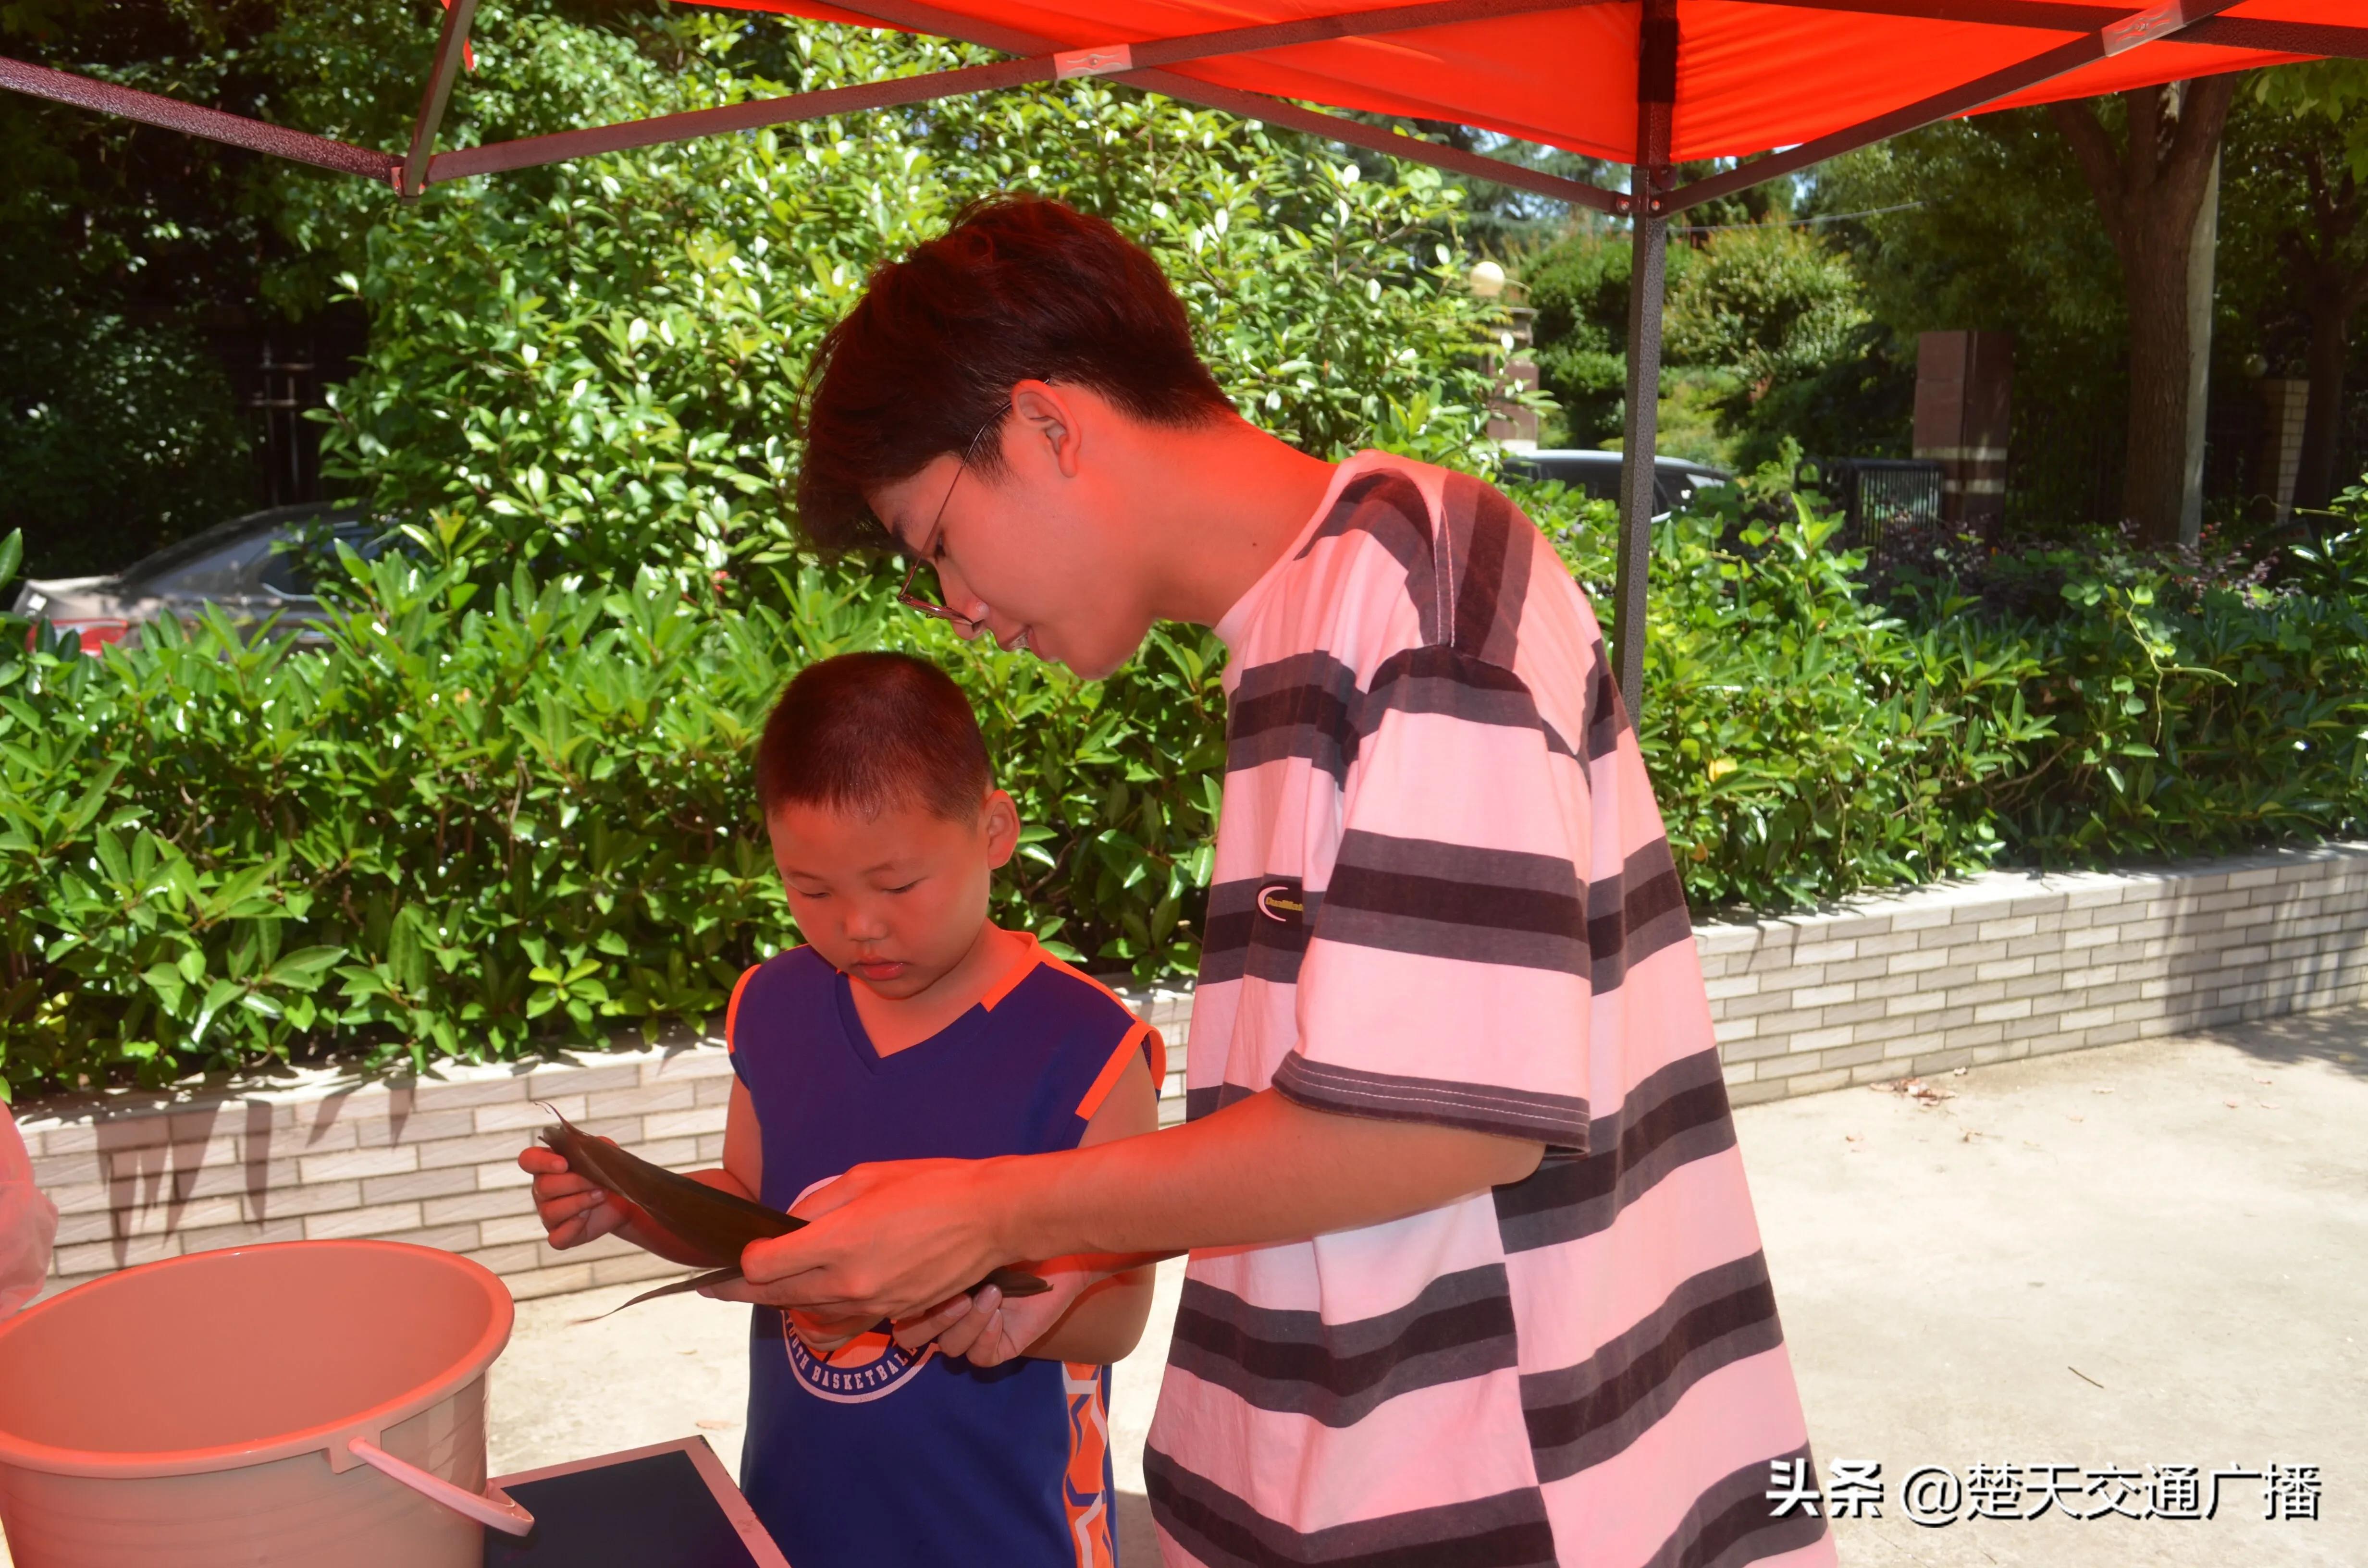 品端午、包粽子 bat365官方亚洲版志愿者与社区儿童提前过端午